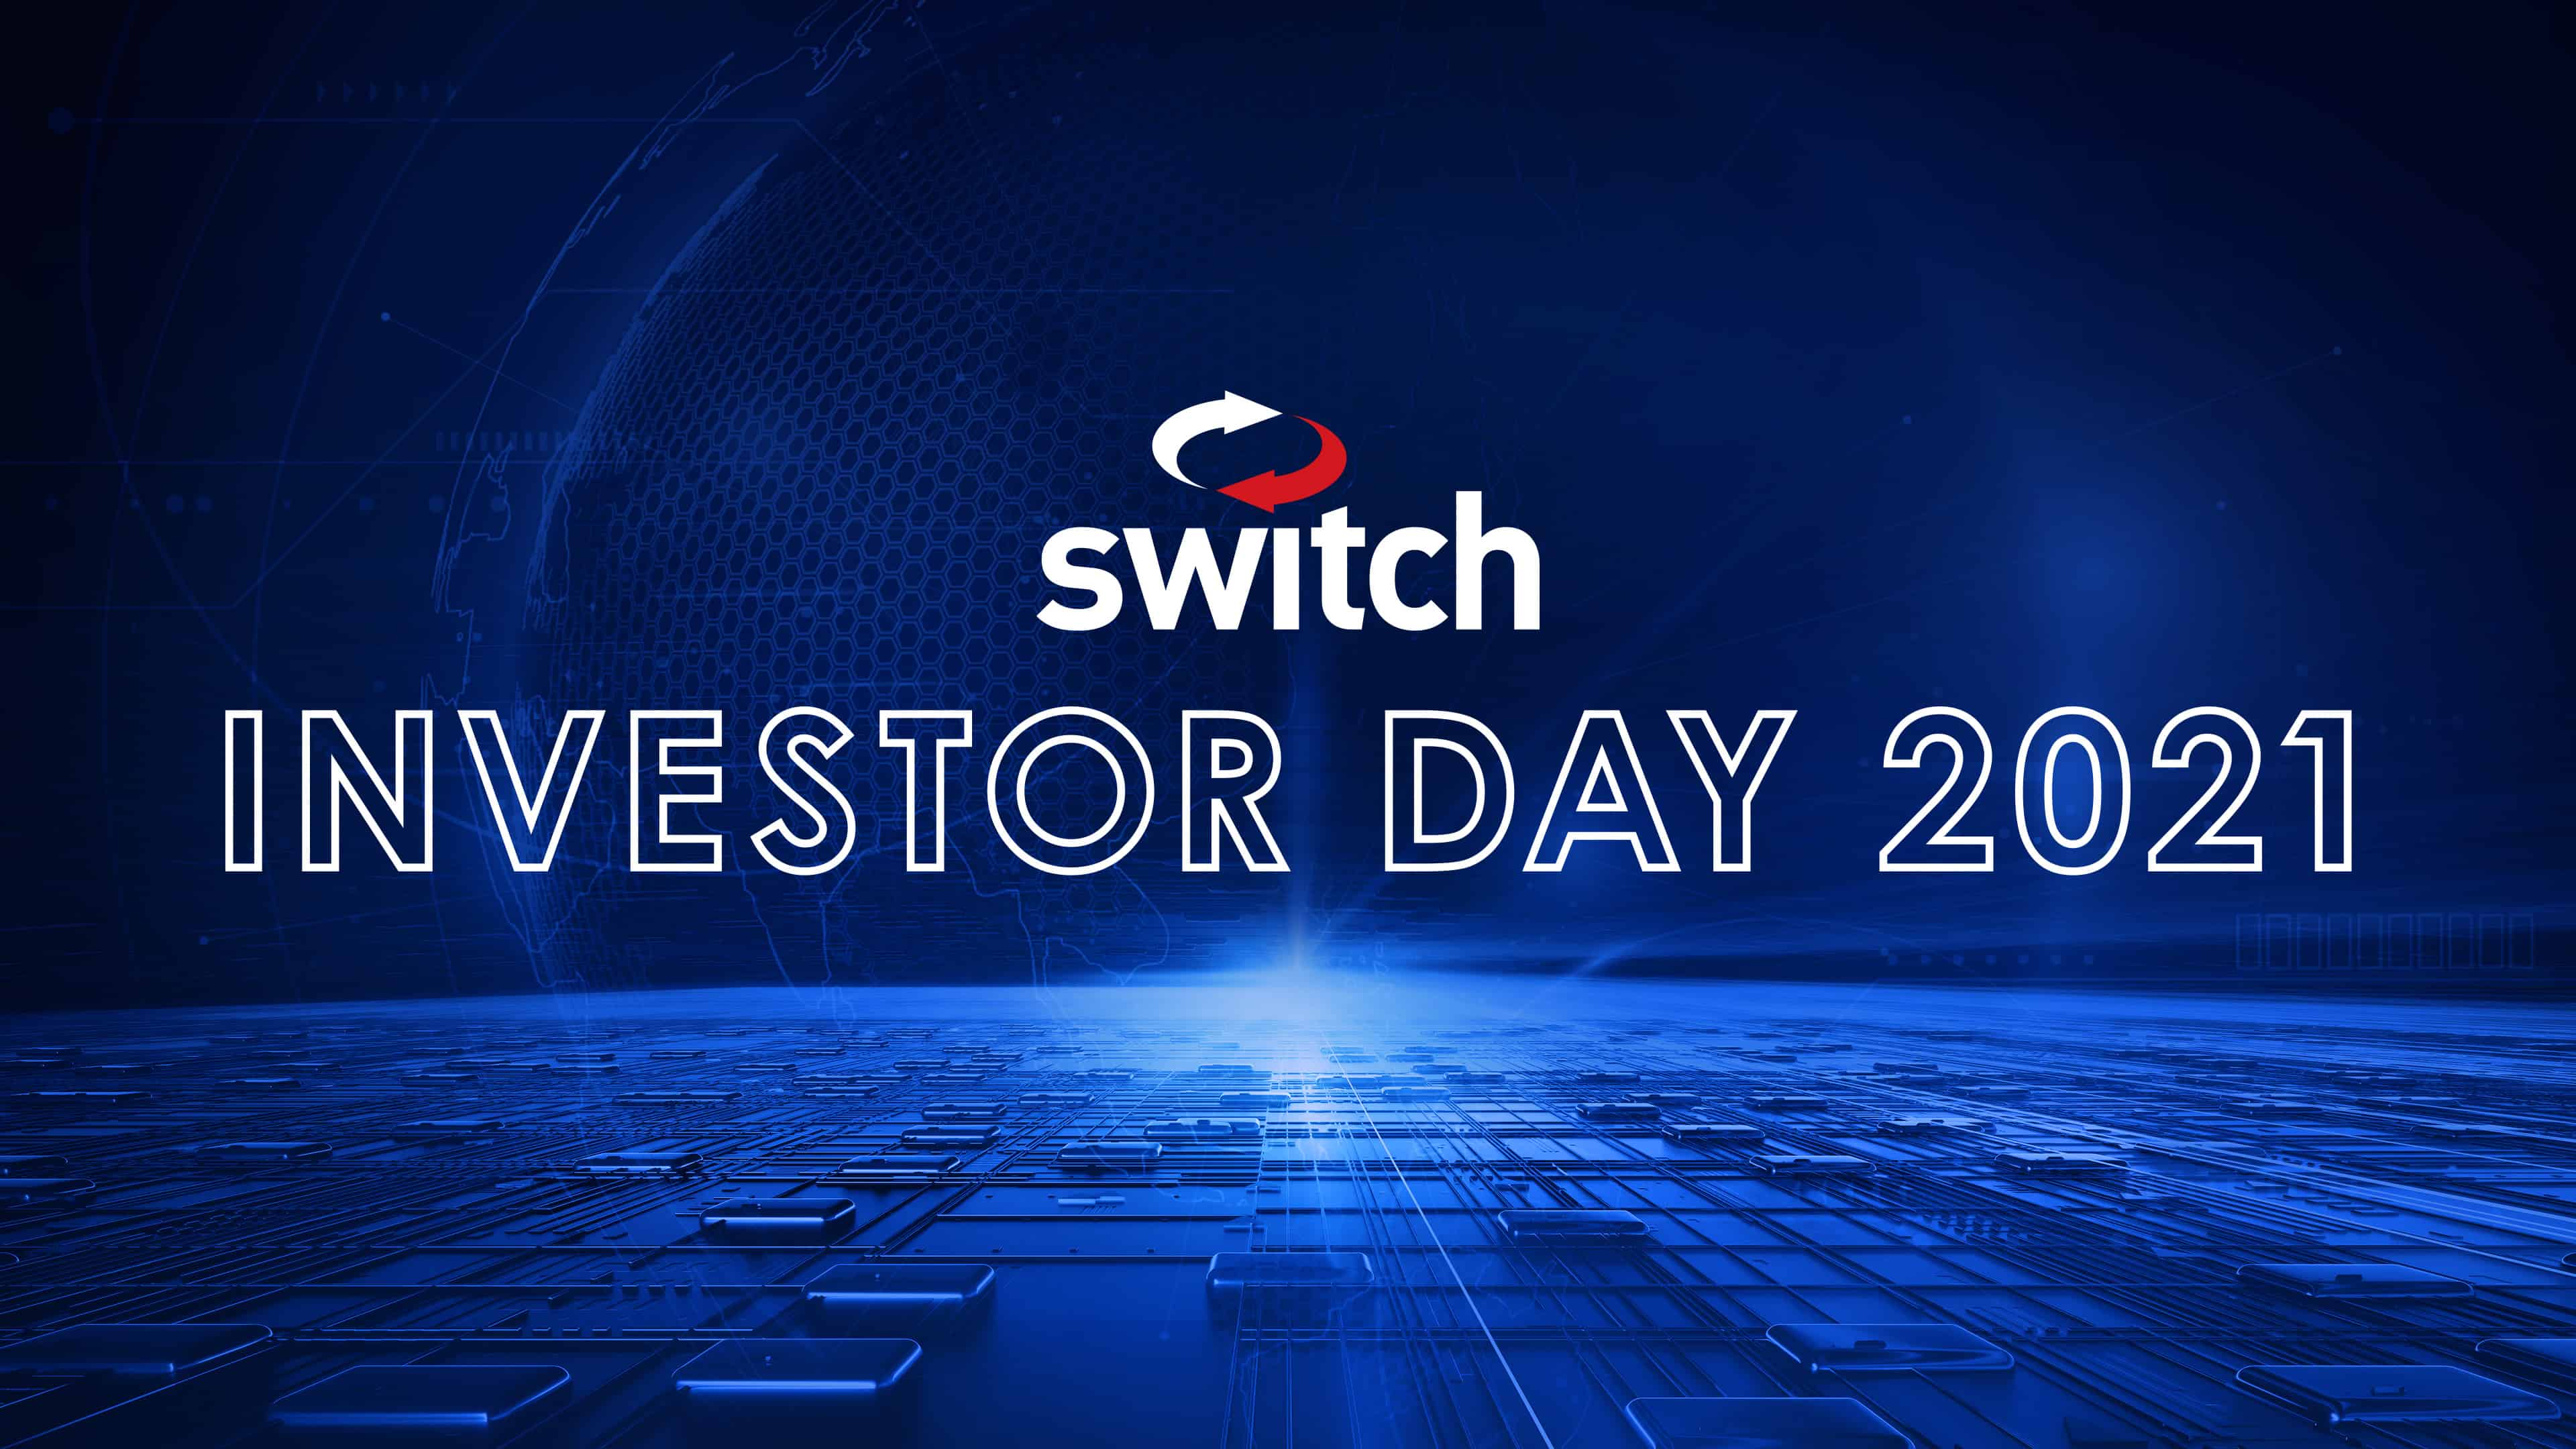 Switch to Host Hybrid Investor Day Program